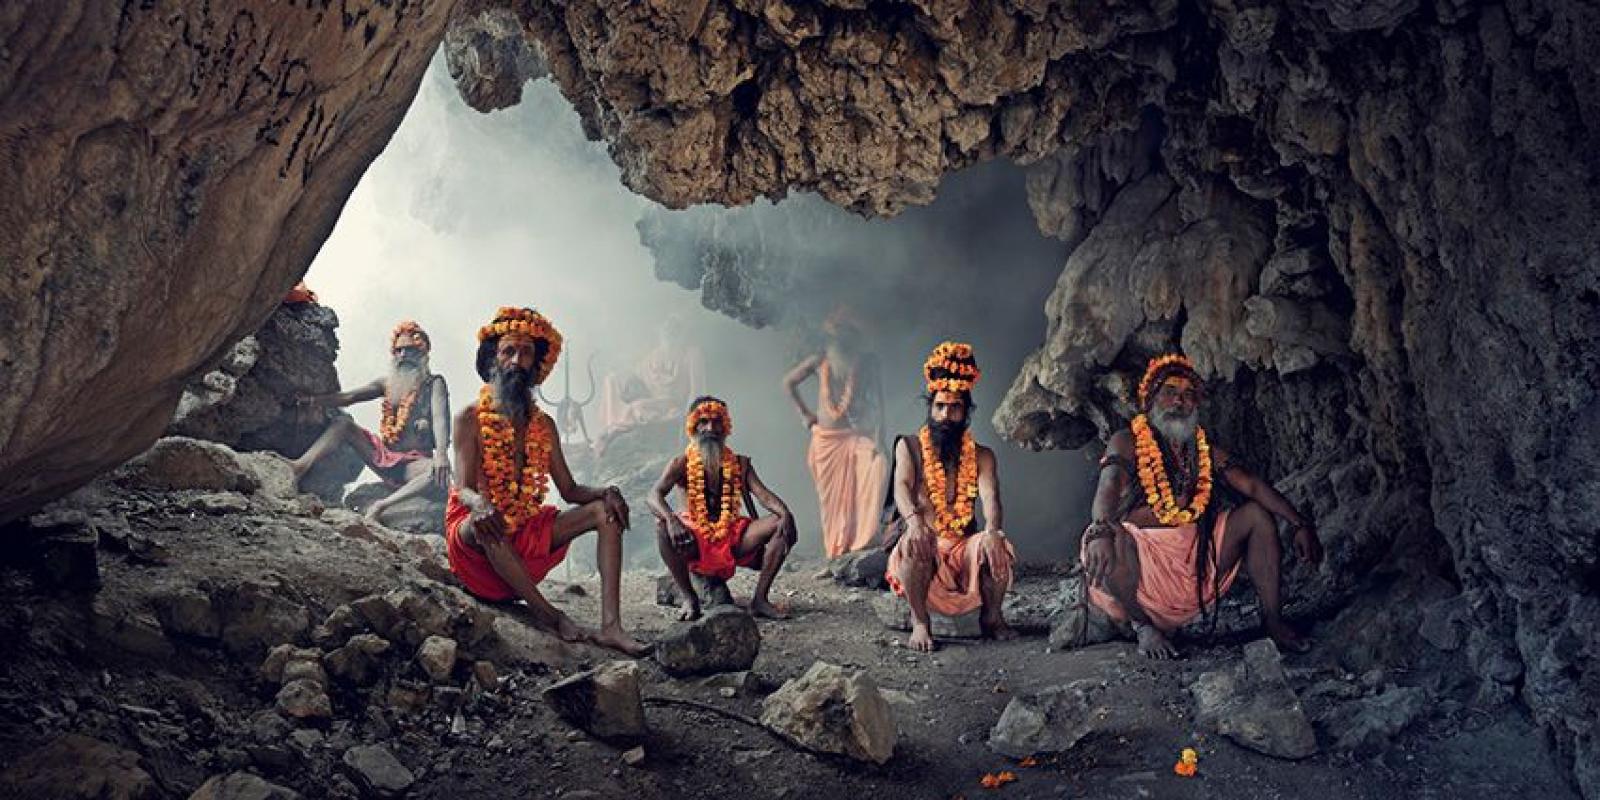 XXIV 1 Grotte, Sadhus, Haridwar

Les sadhus (qui signifient "hommes de bien") sont des hindous dévots qui vivent dans toute l'Inde. Ils portent des vêtements orange représentant la couleur du feu dans lequel ils ont brûlé tous leurs biens pour